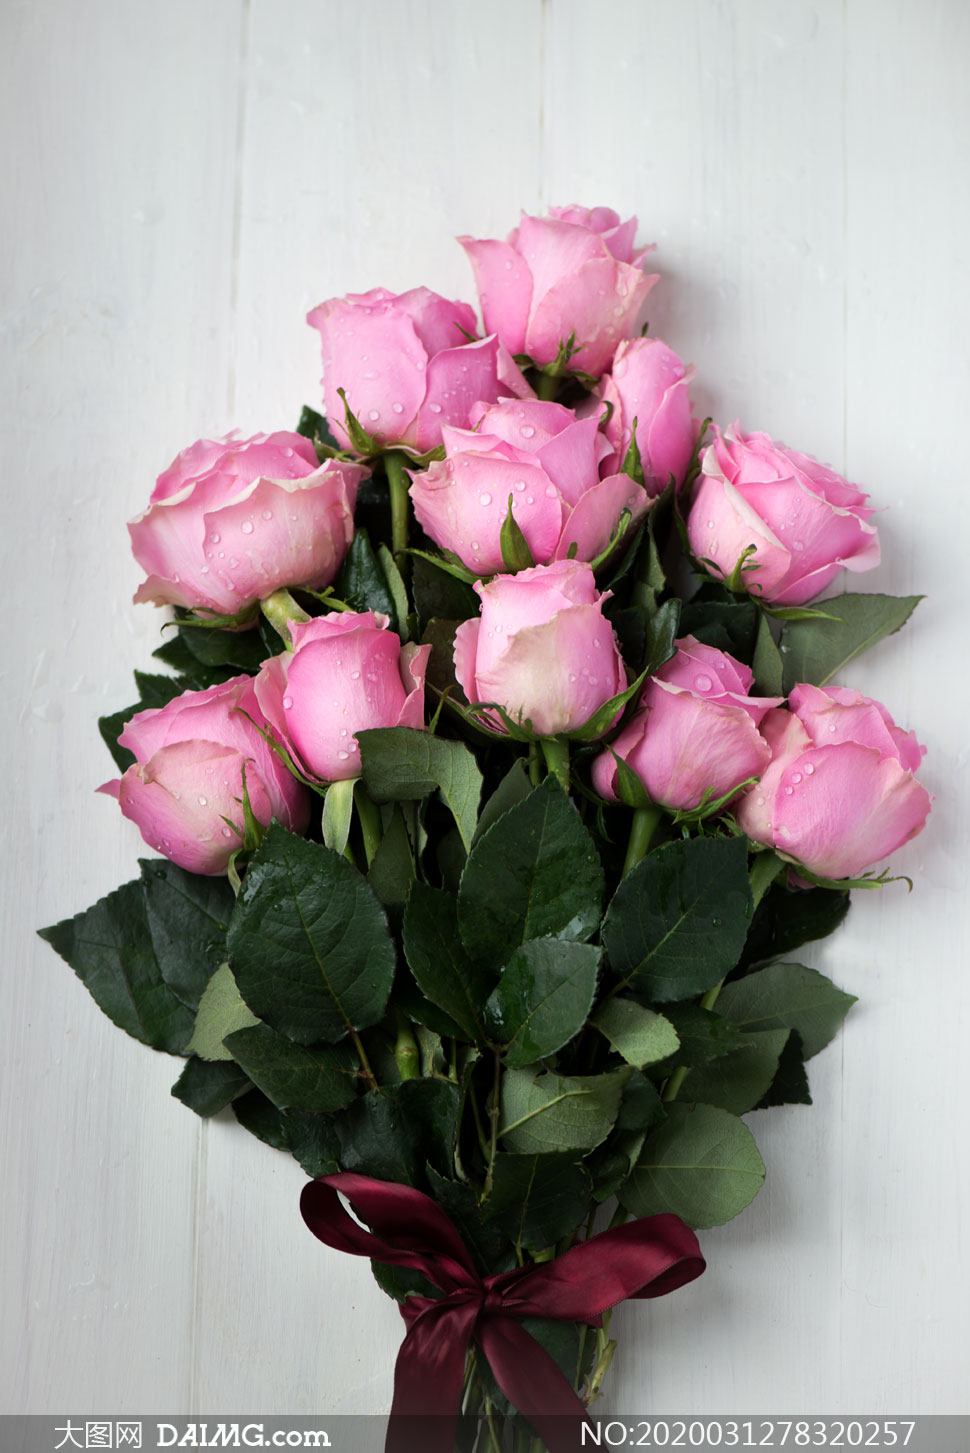 一束新鲜粉色玫瑰花束摄影高清图片_大图网图片素材